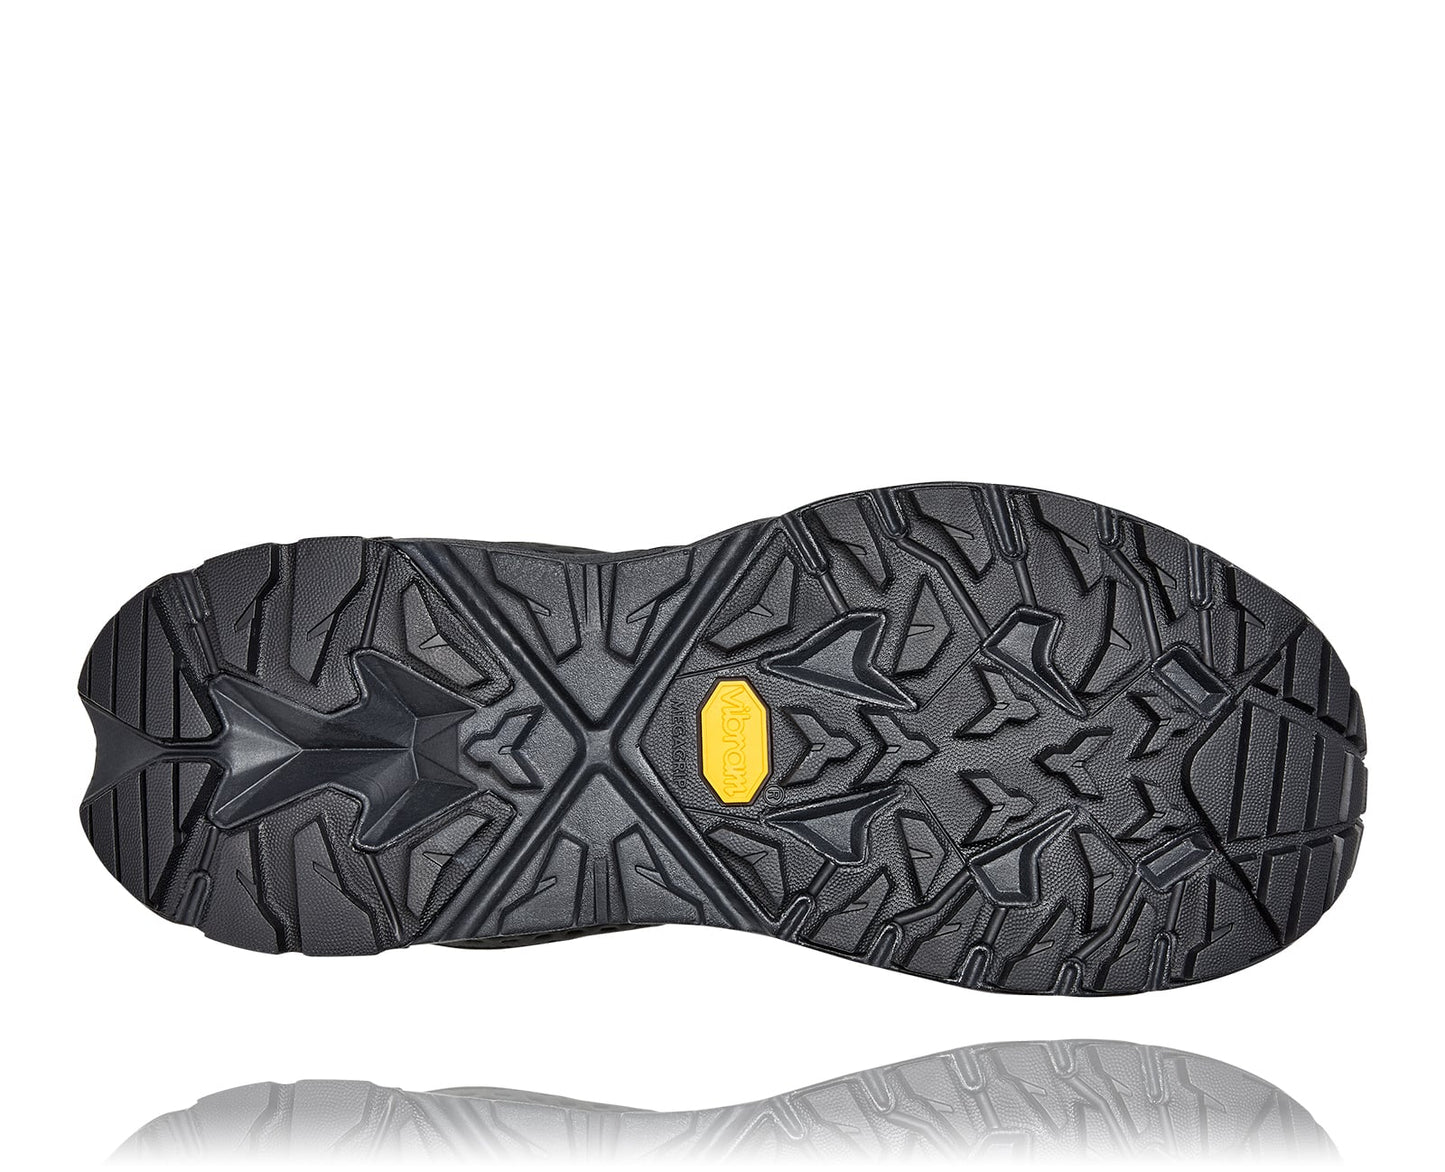 Anacapa W GTX low, svart vattentät sko perfekt för vandring i alla underlag och väder. Hos Hoka specialisterna i Sverige.